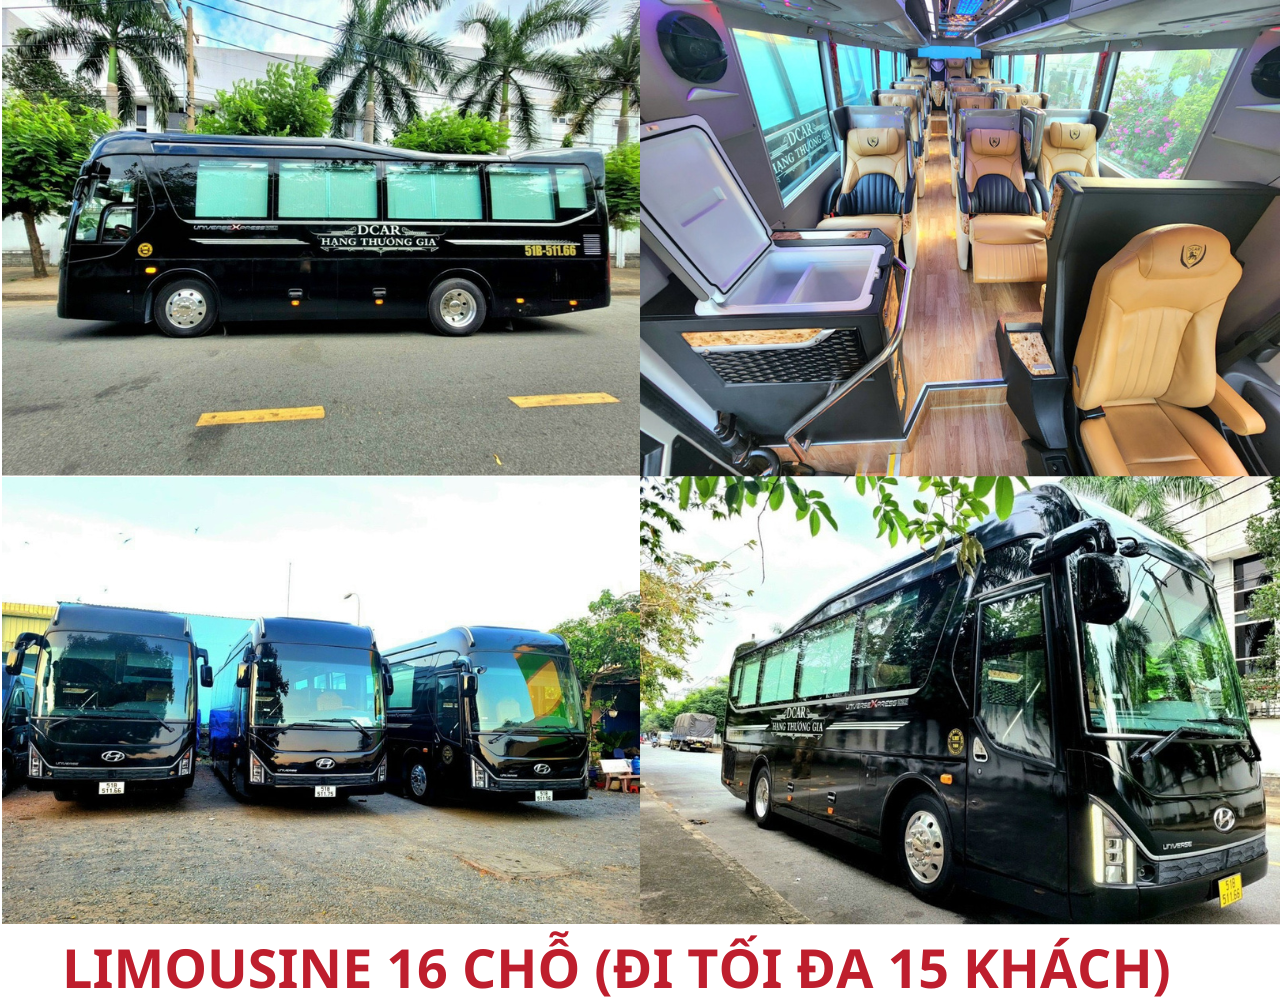 limousine-16-cho-di-toi-da-15-khach.png (2.26 MB)